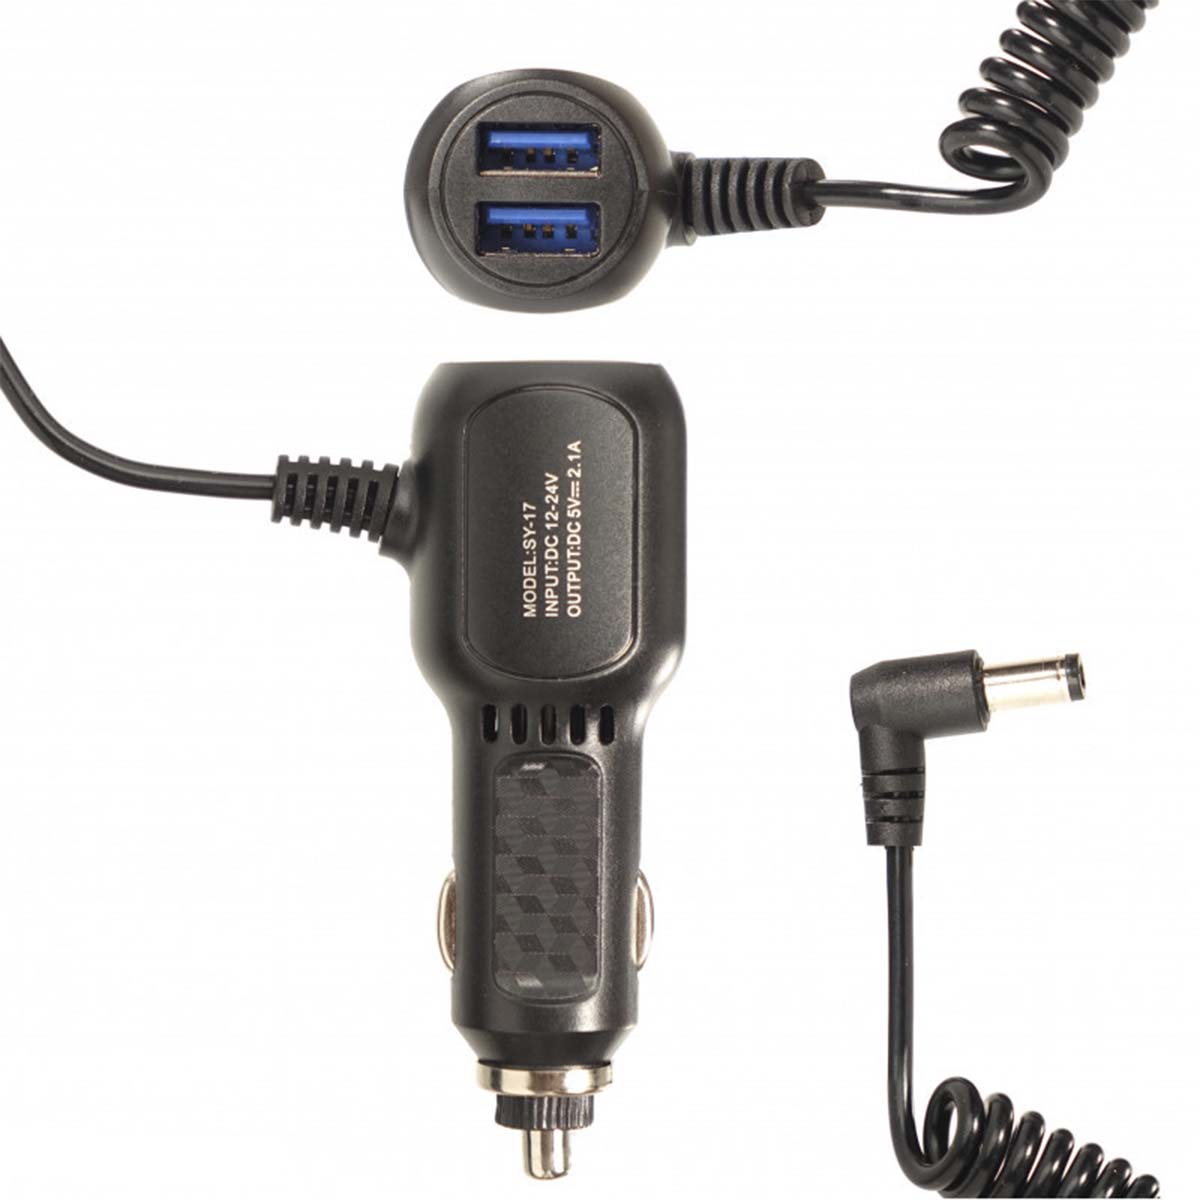 АЗУ (Автомобильное зарядное устройство) SY-17, 2 USB - 5V/2.1A, с витым кабелем, 5.5x2.5